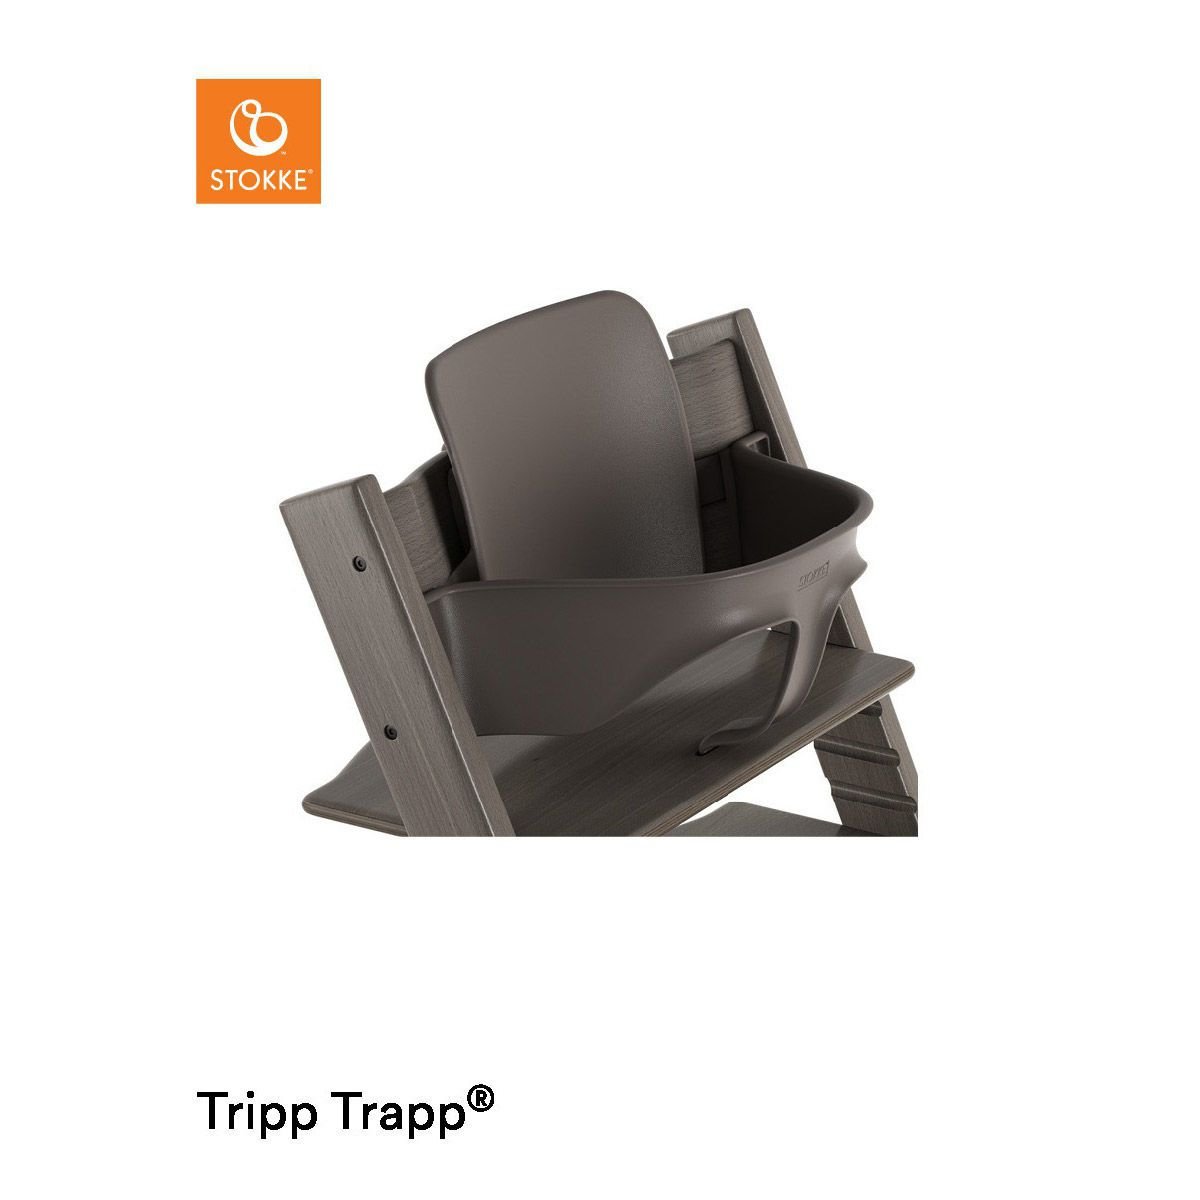 STOKKE Tripp Trapp® Buche Hazy Grey, Grau